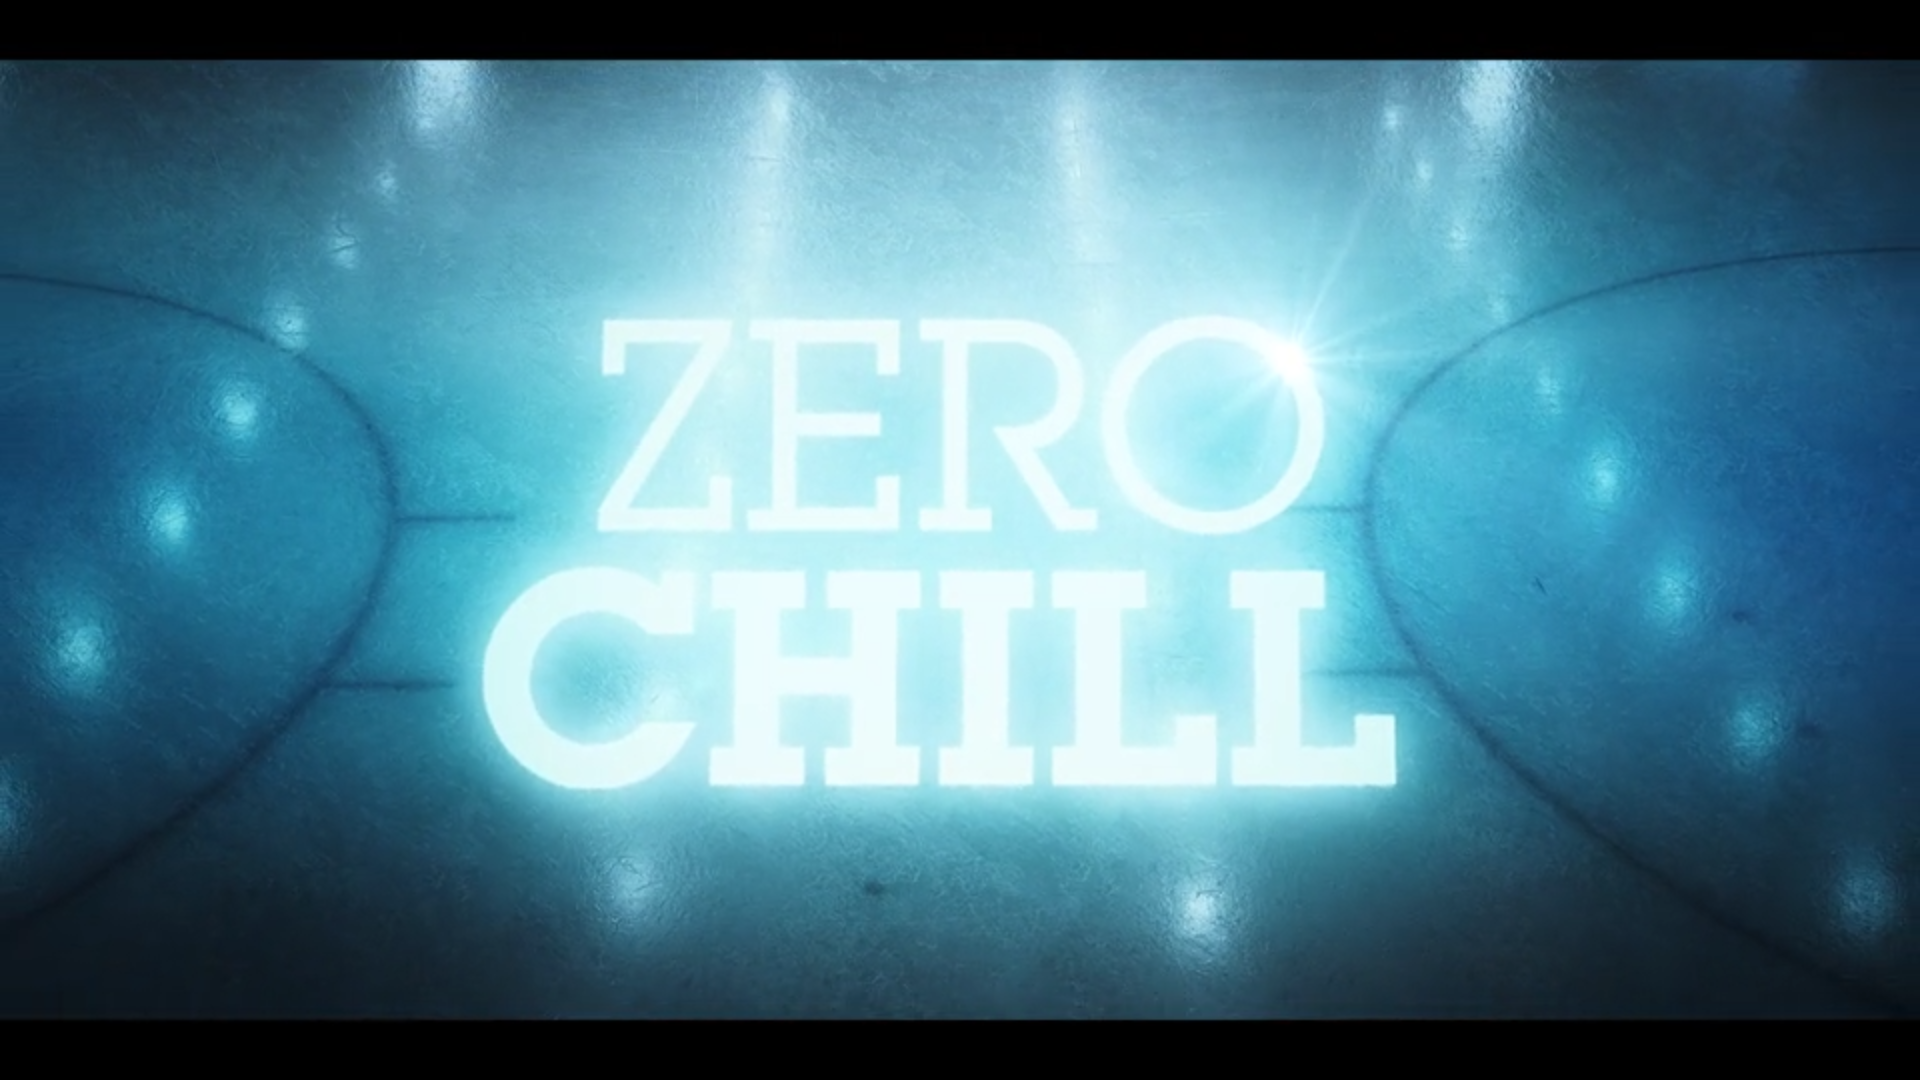 Zero Chill Series. Zero Chill Club.